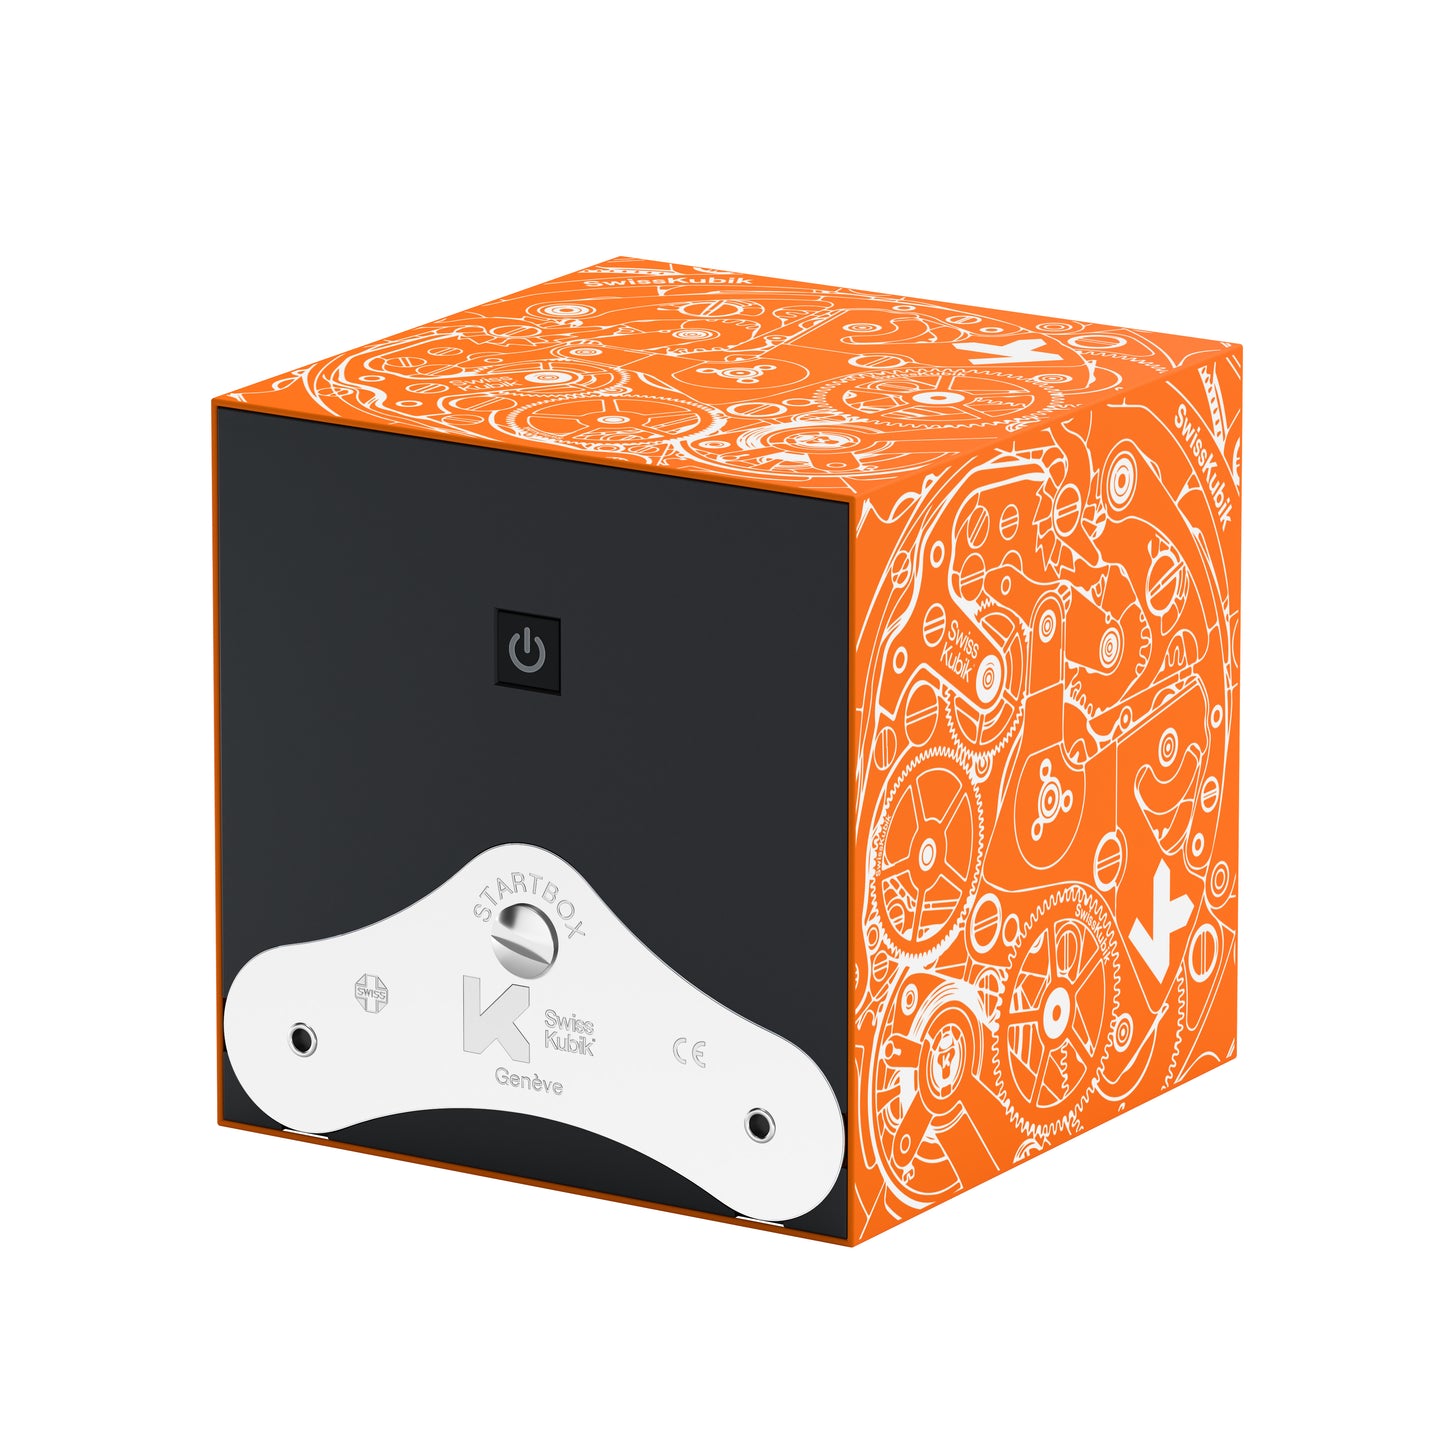 Startbox 1 montre Soft Touch Orange : écrin rotatif pour montre automatique